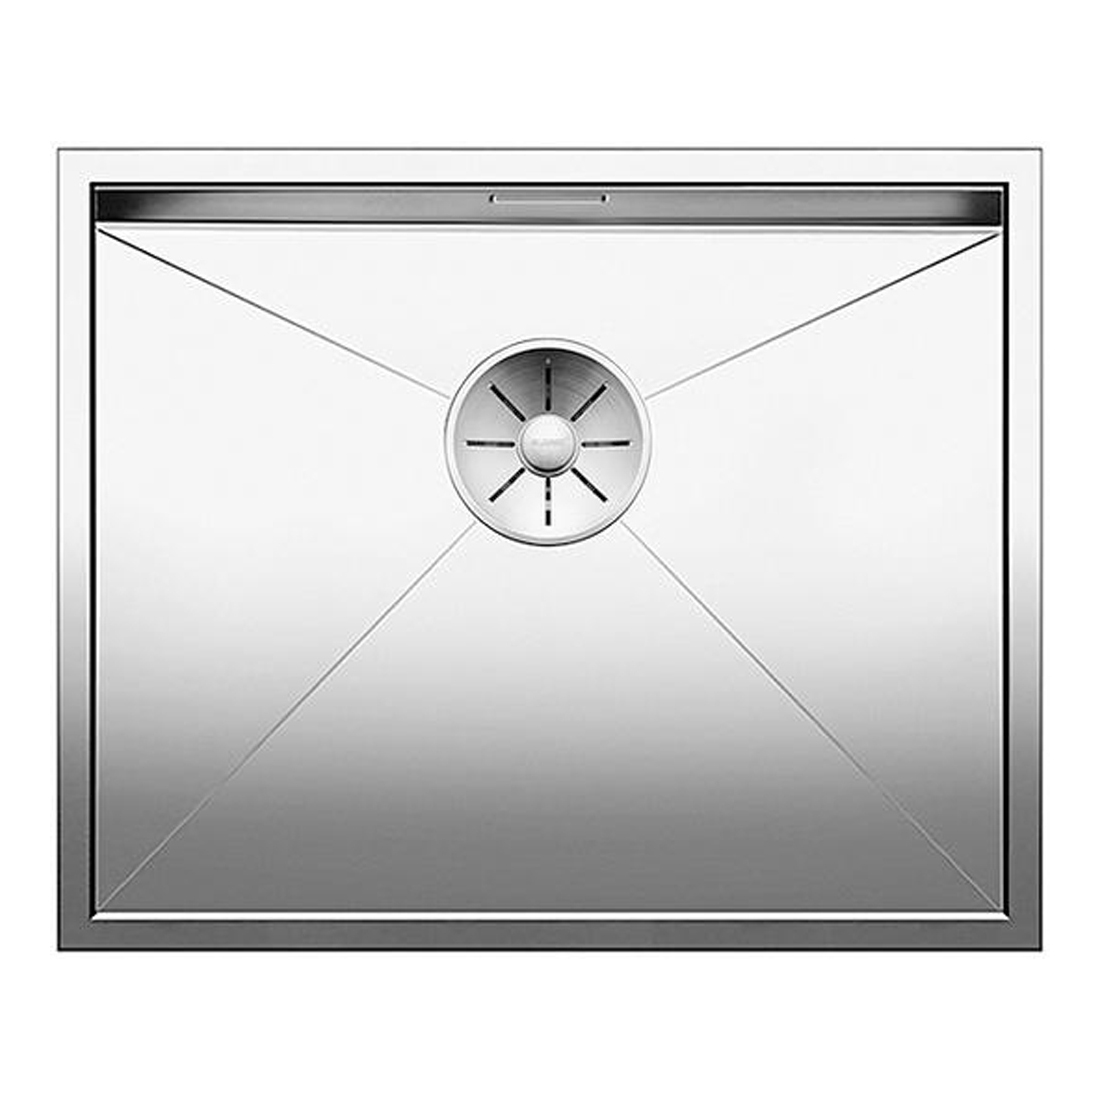 Кухонная мойка Blanco Zerox 500-U зеркальная полировка кухонная мойка blanco zerox 450 if зеркальная полировка